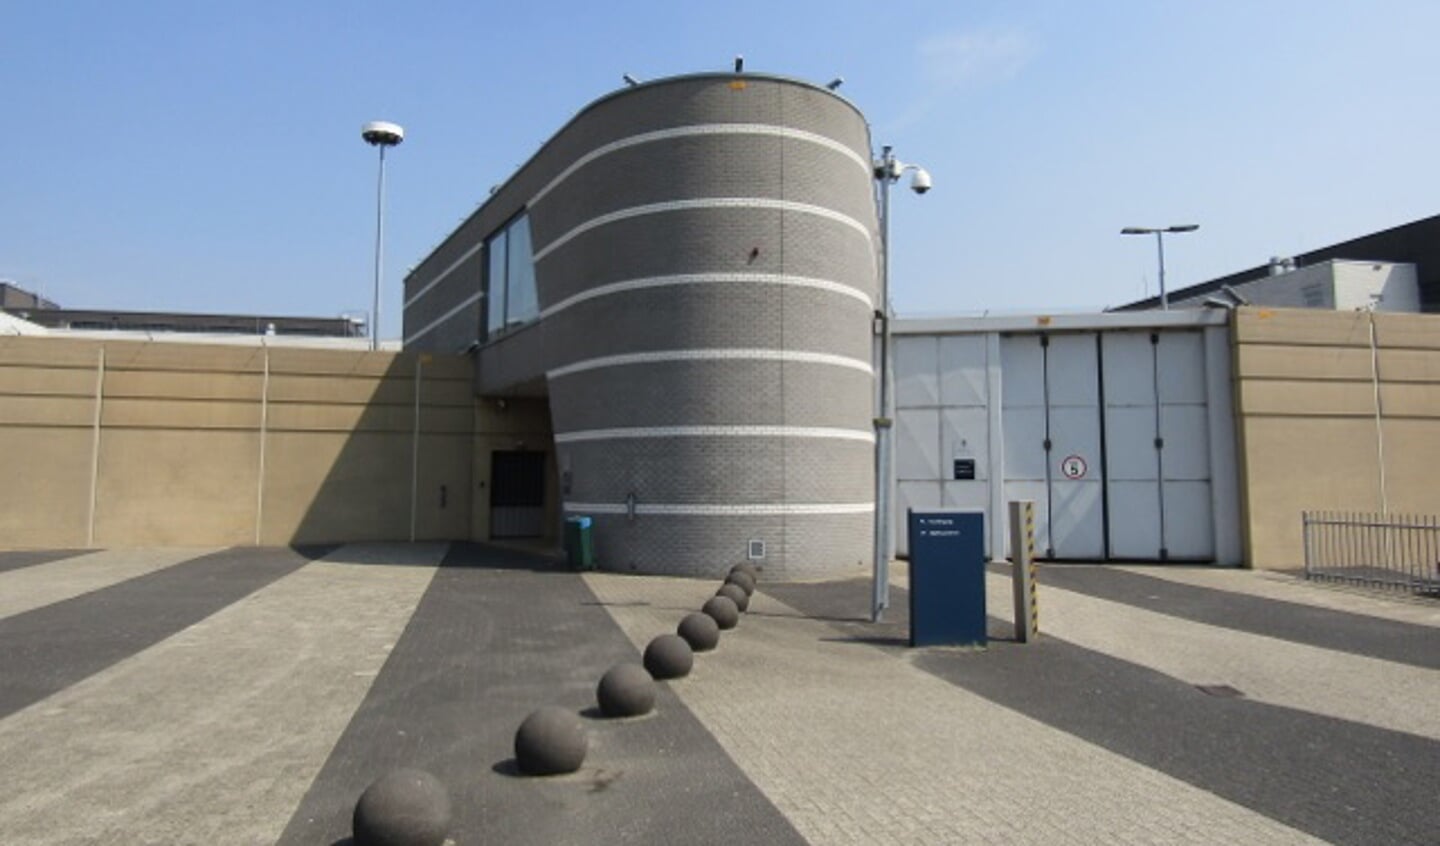 Penitentiaire Inrichting (PI) in Nieuwegein